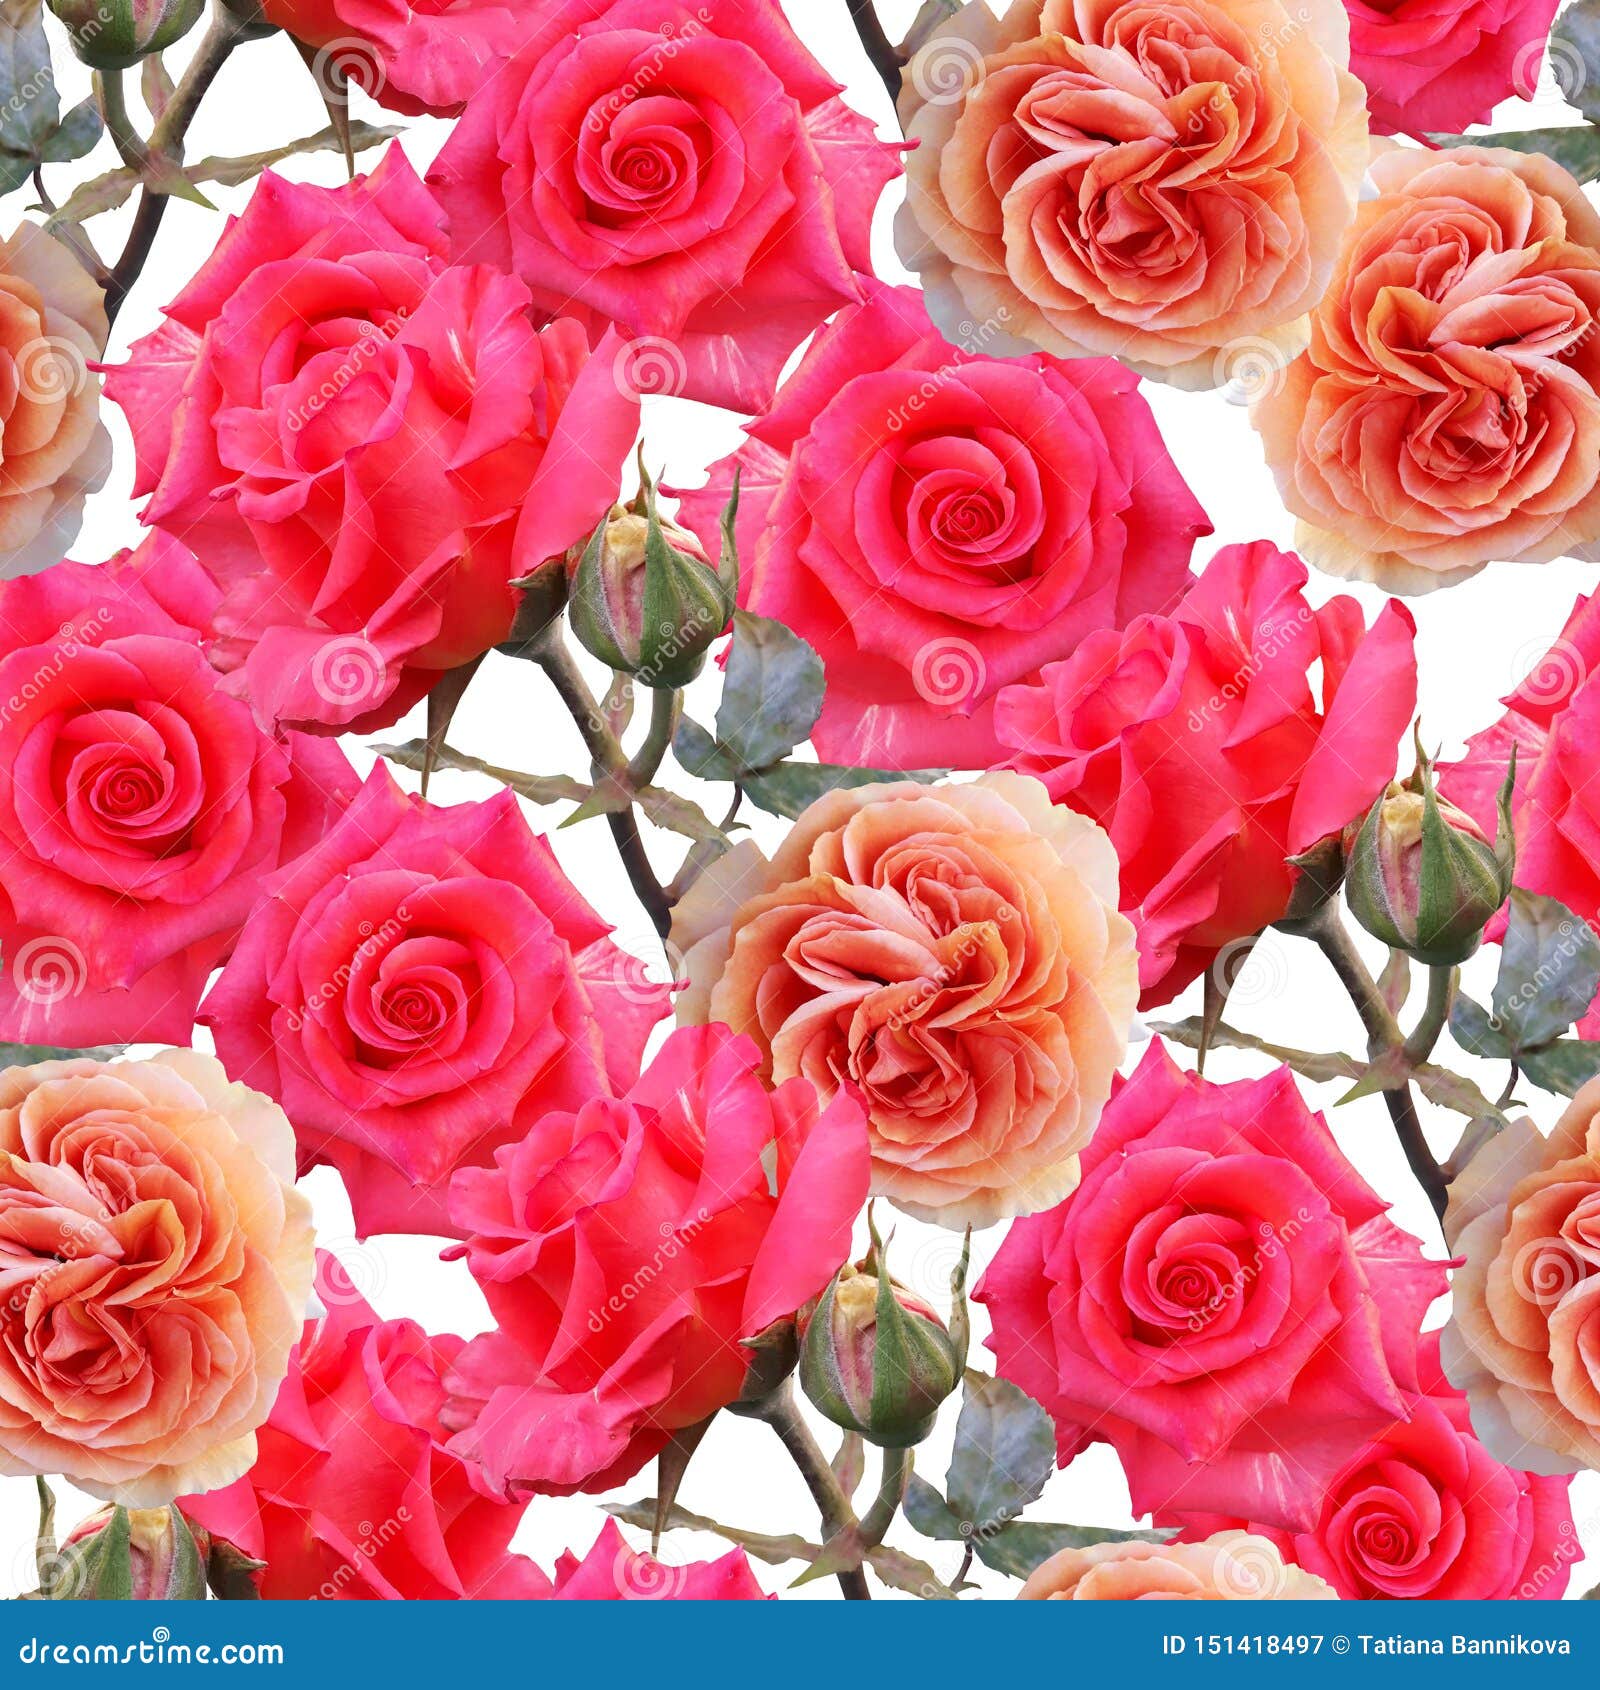 Hoa hồng nhiều màu sắc sẽ mang đến cho bạn một trải nghiệm thú vị và vô cùng lung linh. Hình nền này chứa đựng đủ các màu sắc tươi sáng và đẹp mắt, giúp bạn cảm thấy như đang đắm chìm vào rực rỡ của đóa hoa.